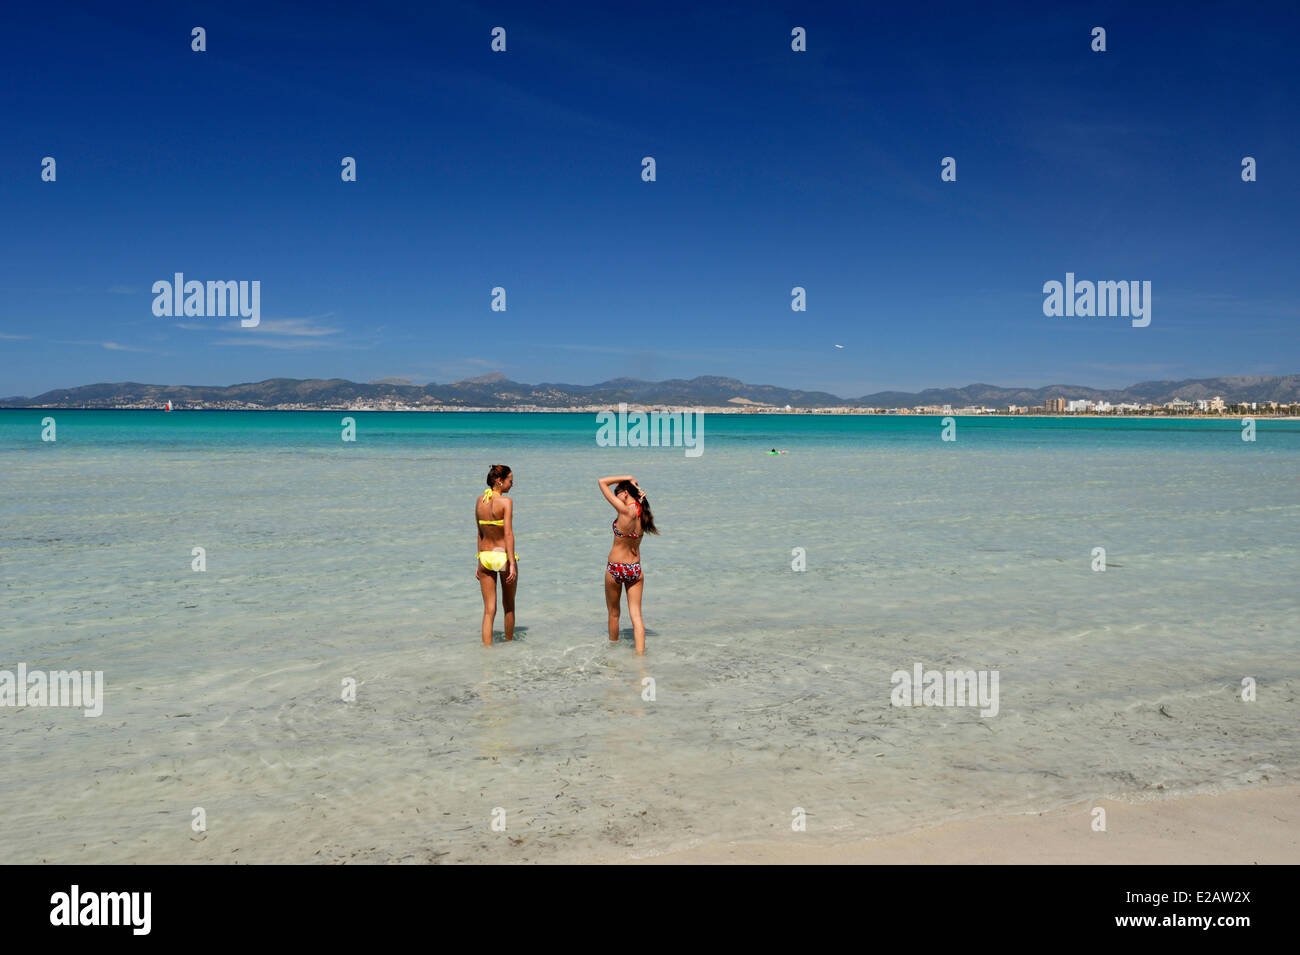 Isole Baleari Spagna, Mallorca, S'Arenal, El Arenal, spiaggia Palma, giovani donne entrata in acqua Foto Stock